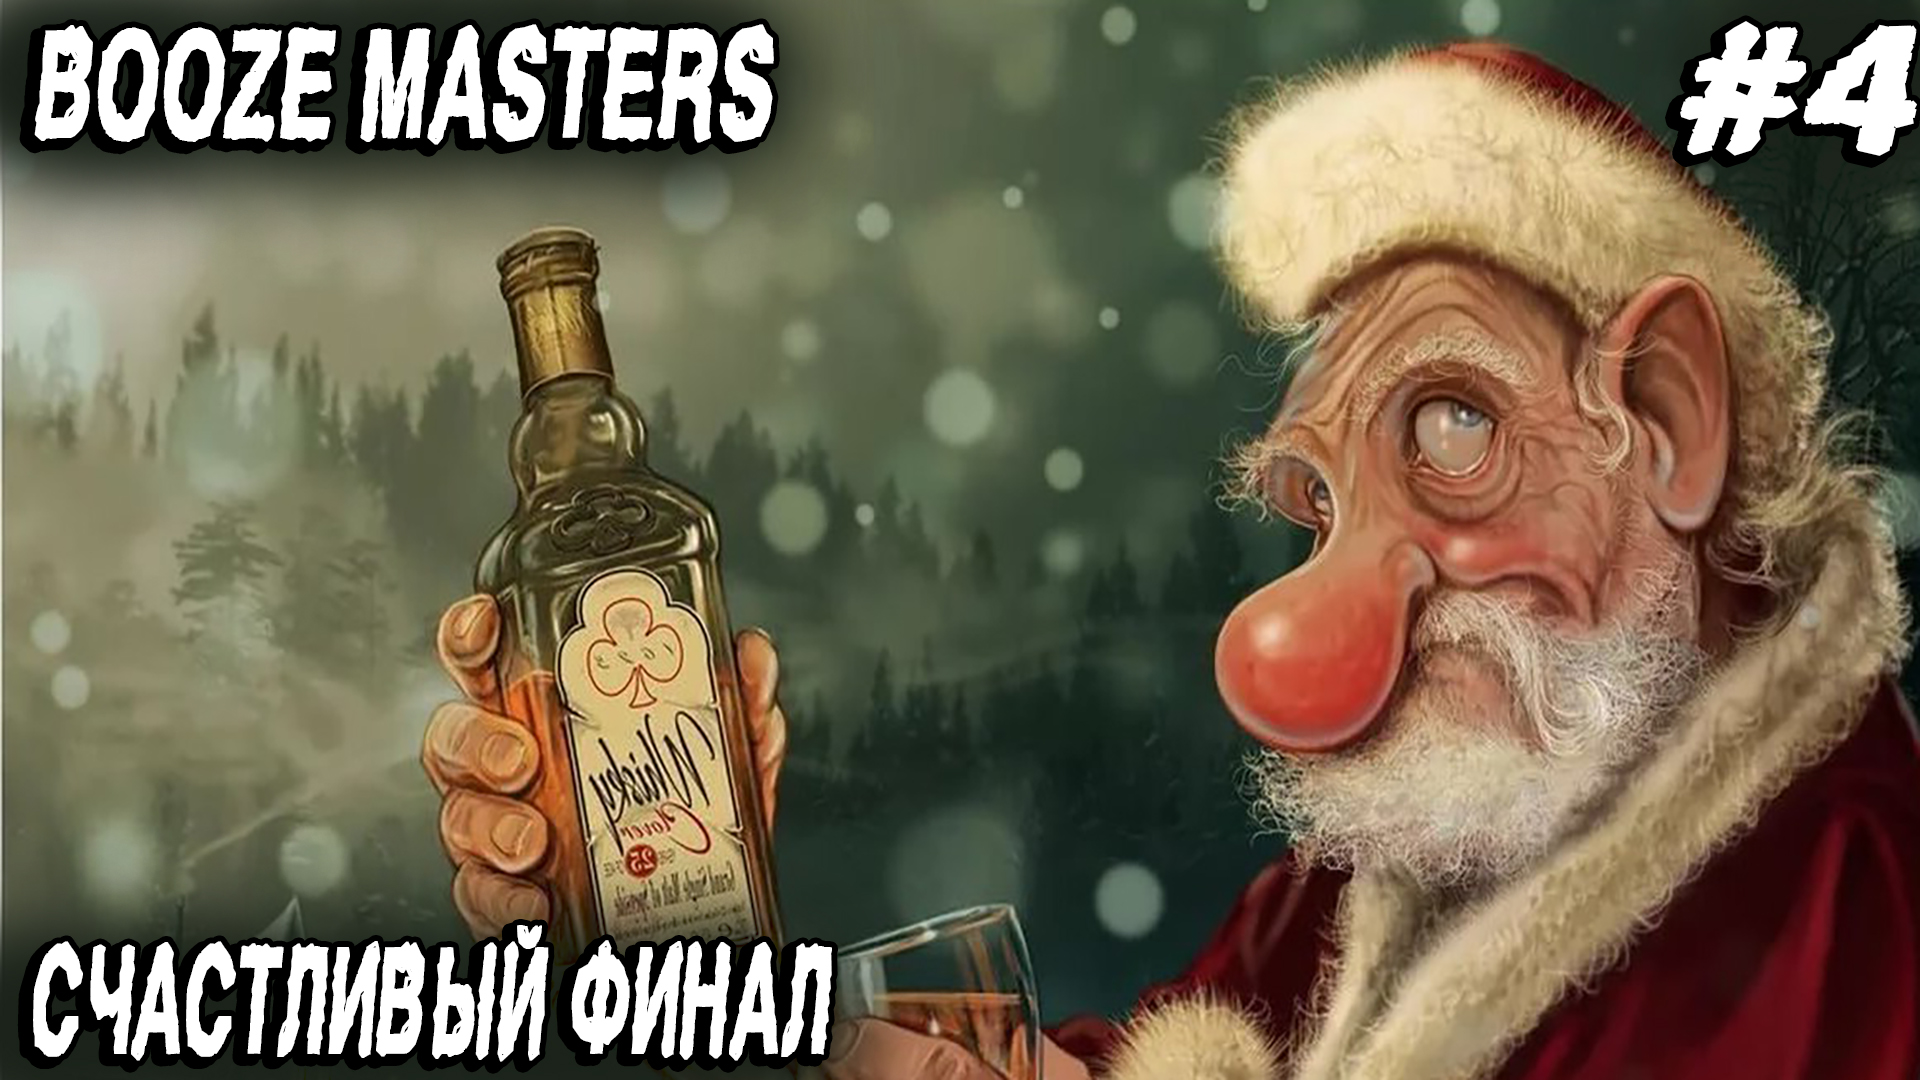 Booze Masters Freezing Moonshine - финал игры. Дядя мутит элитное пойло и делает пикантные фото #4